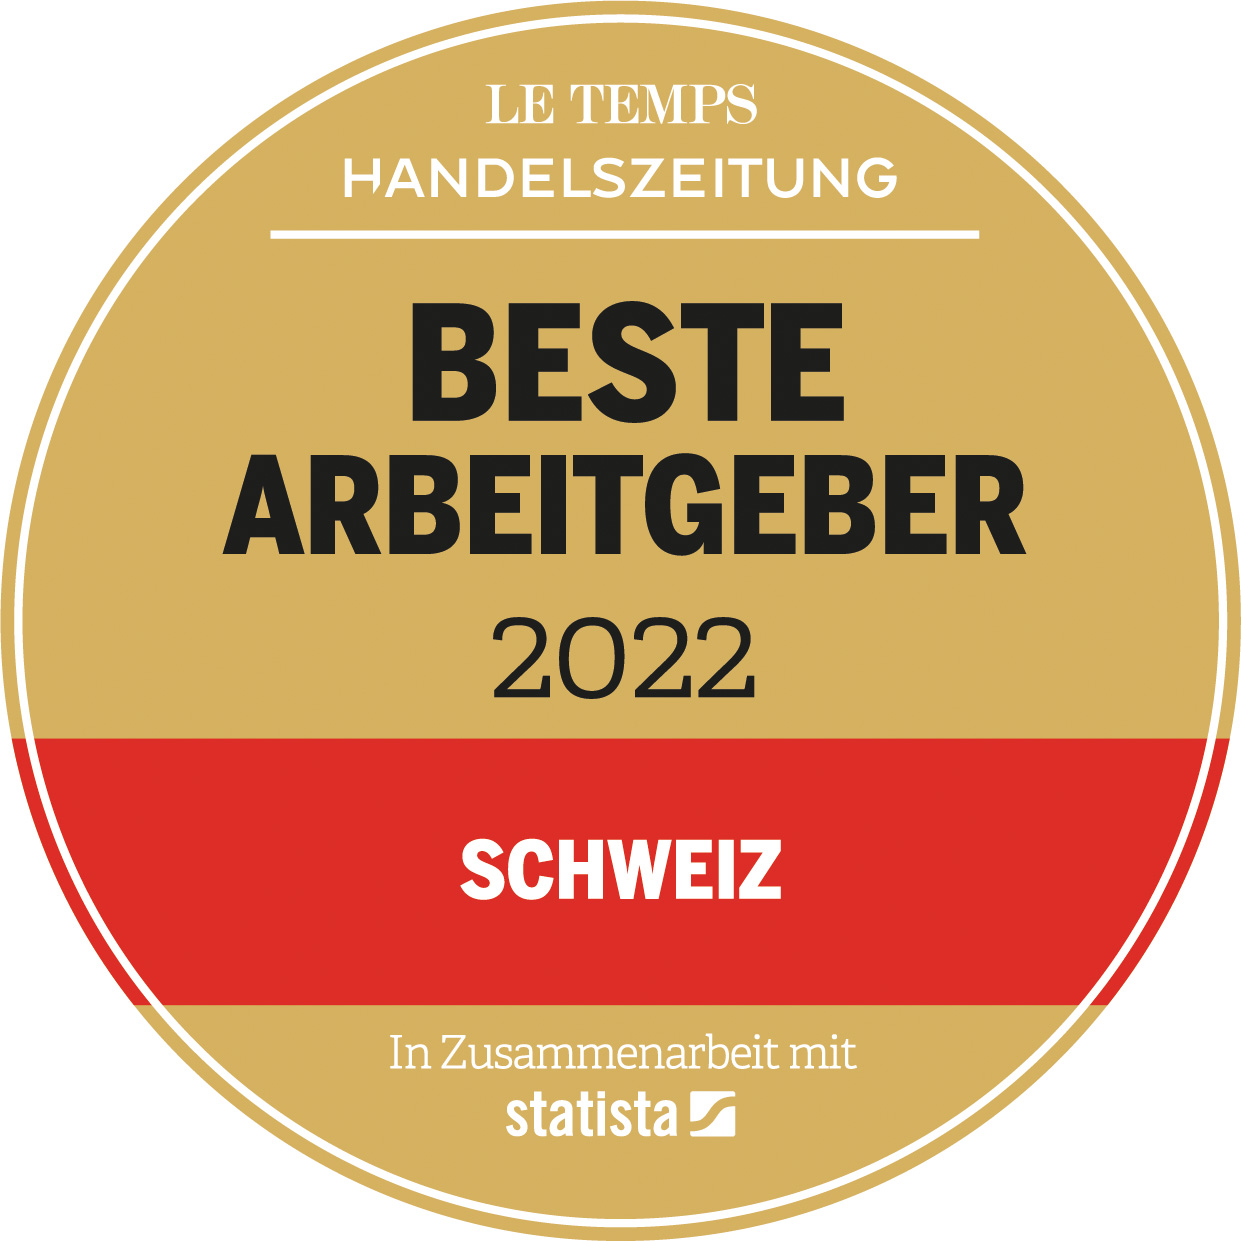 Auszeichnung der Zeitung Le Temps als einer der besten Arbeitgeber 2022